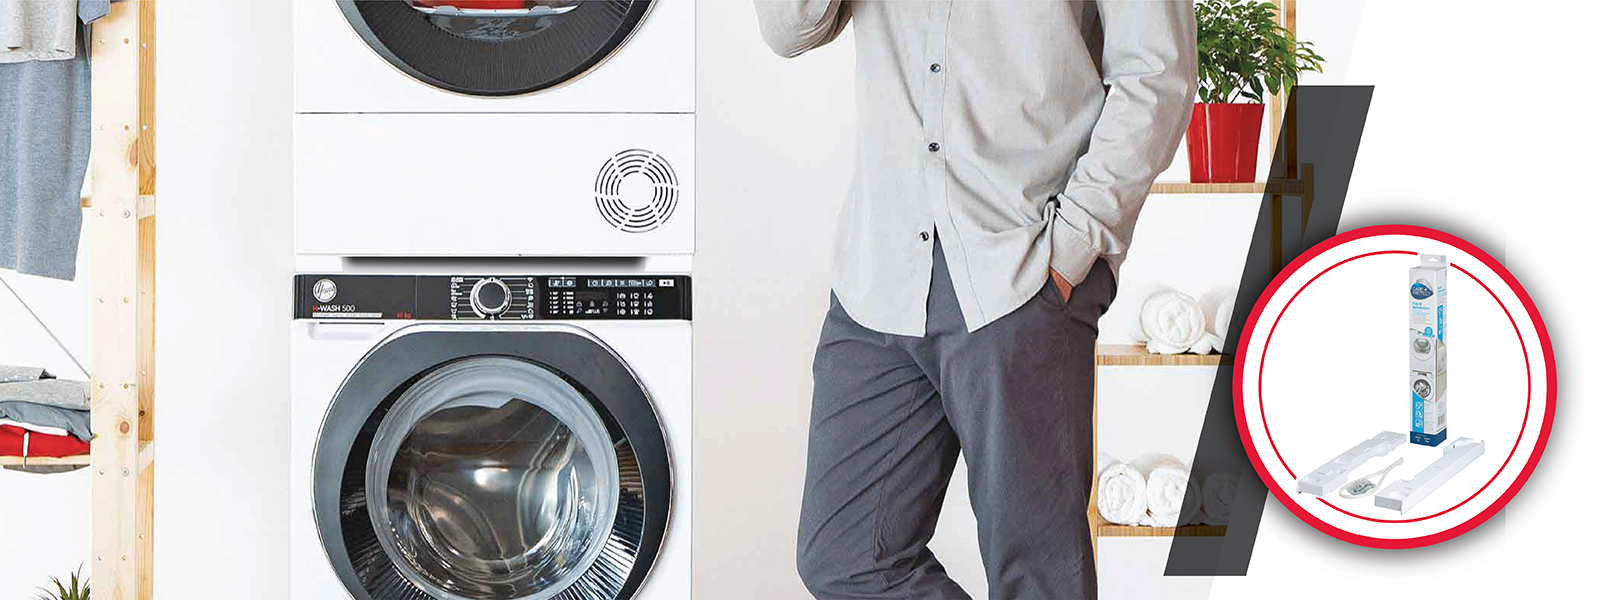 Çamaşır ve Kurutma Makinesi Alımlarında Ücretsiz Bağlantı Aparatı Kampanyası